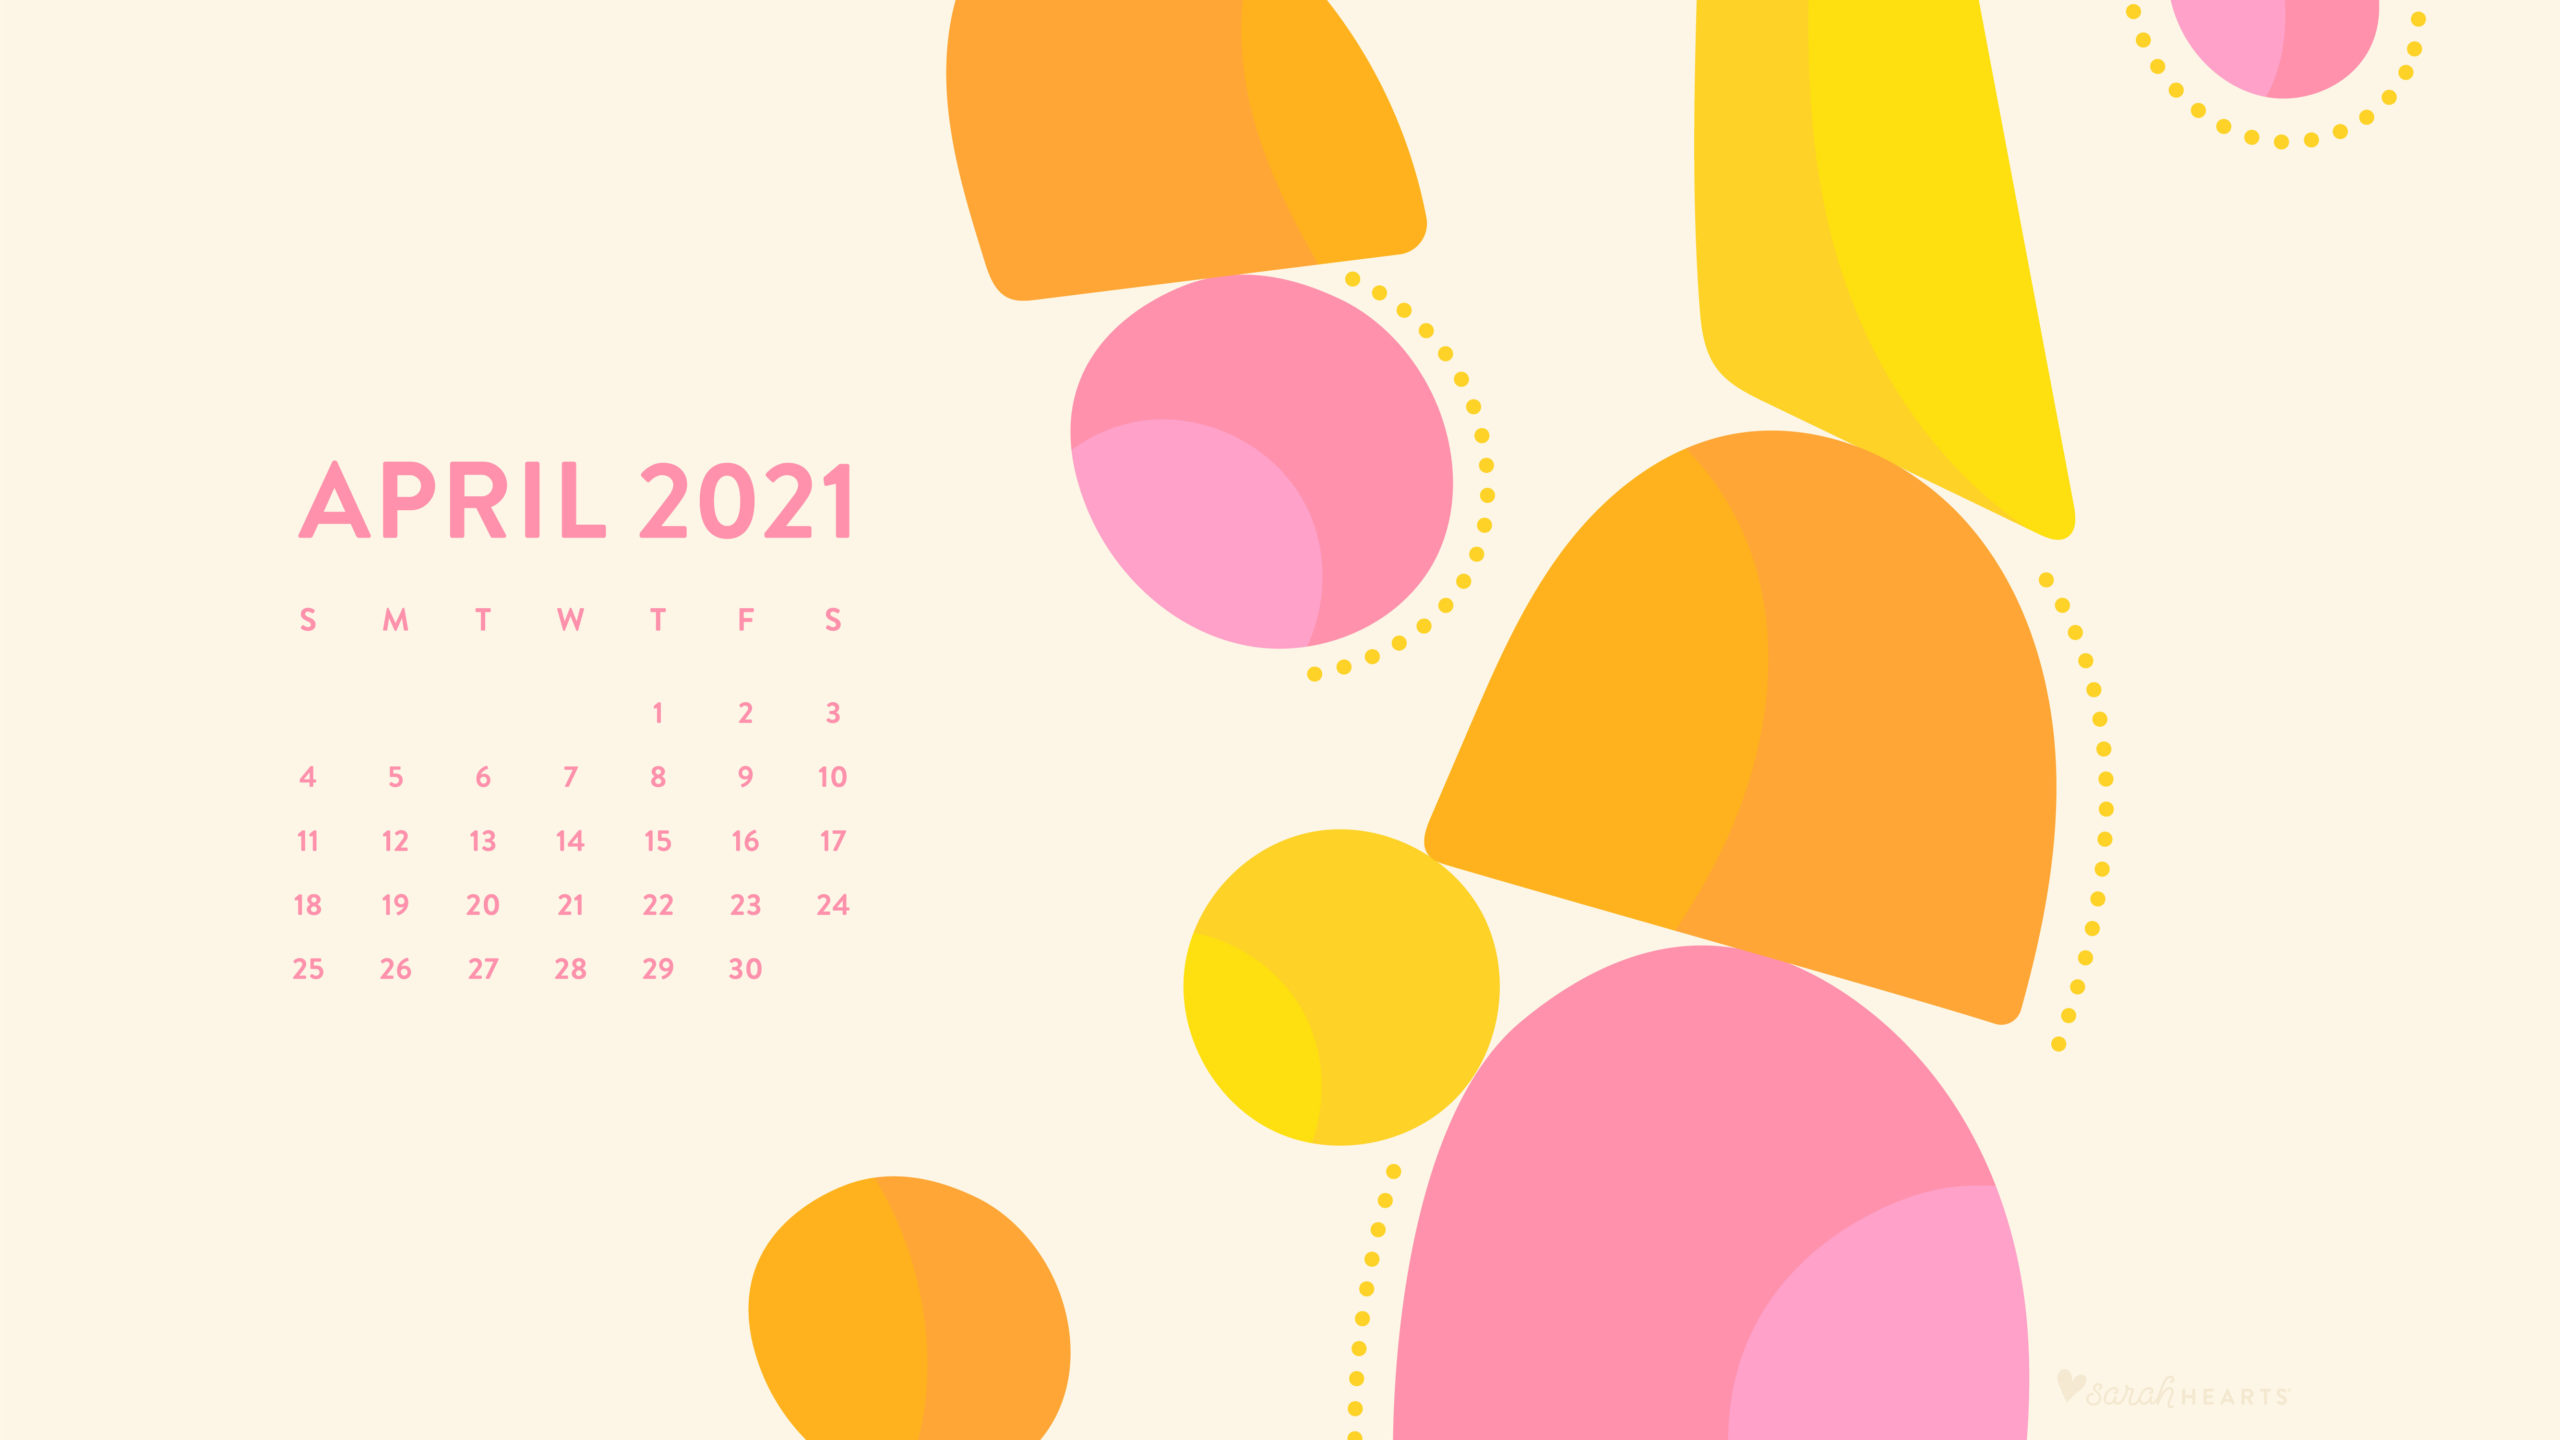 April Calendar 2023 Wallpaper  TubeWP